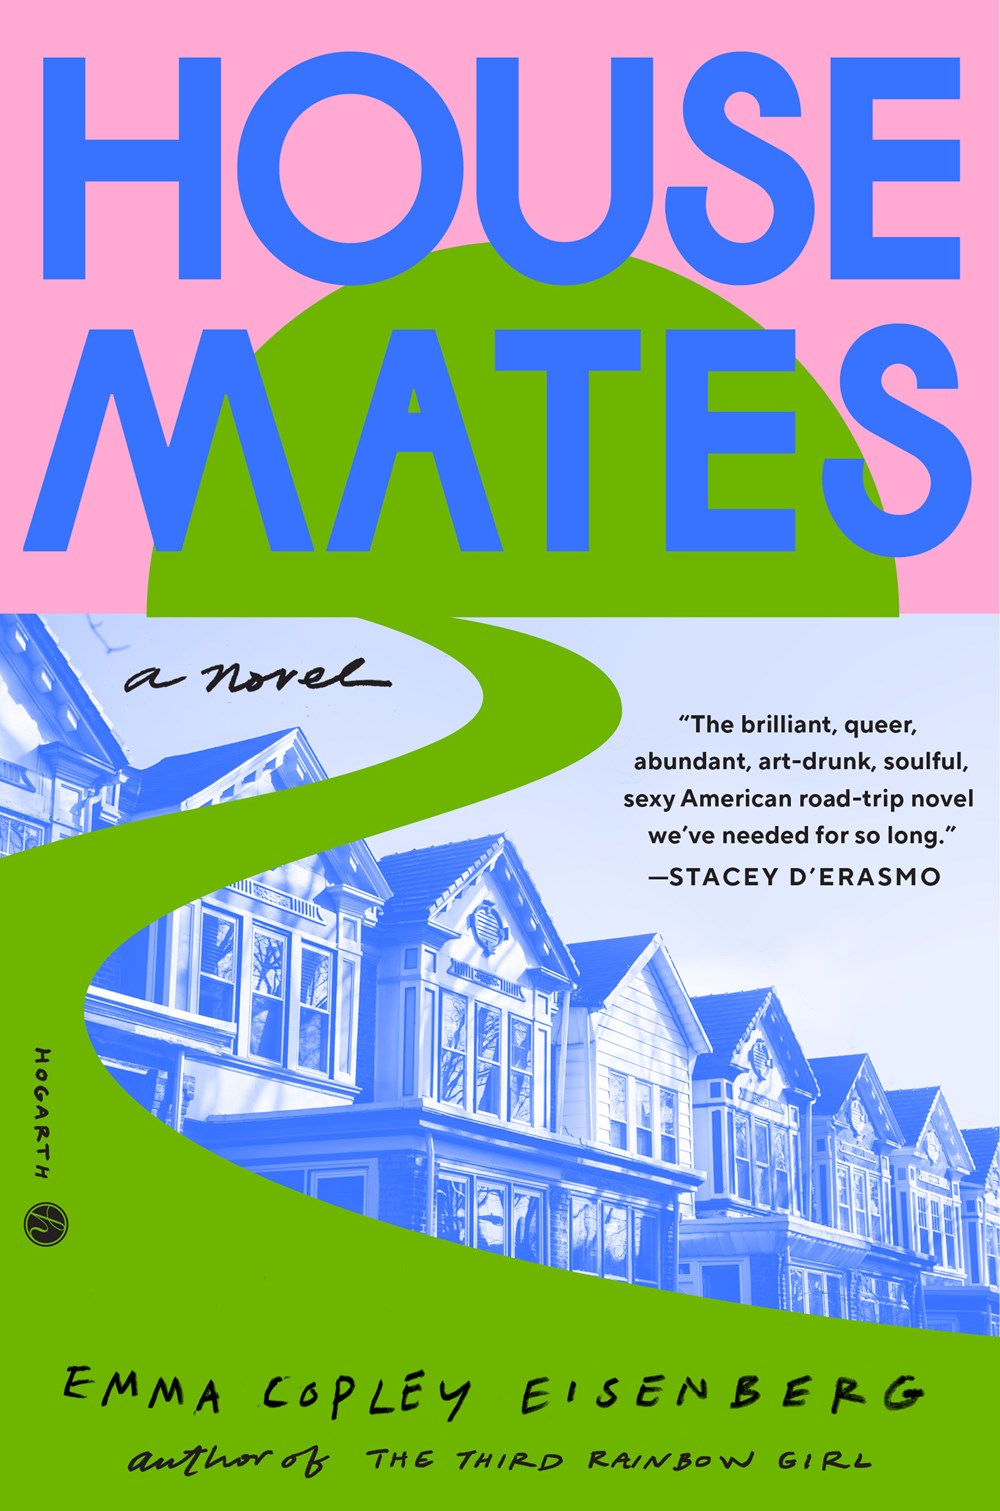 Housemates: A Novel by Emma Copley Eisenberg (5/28/24)